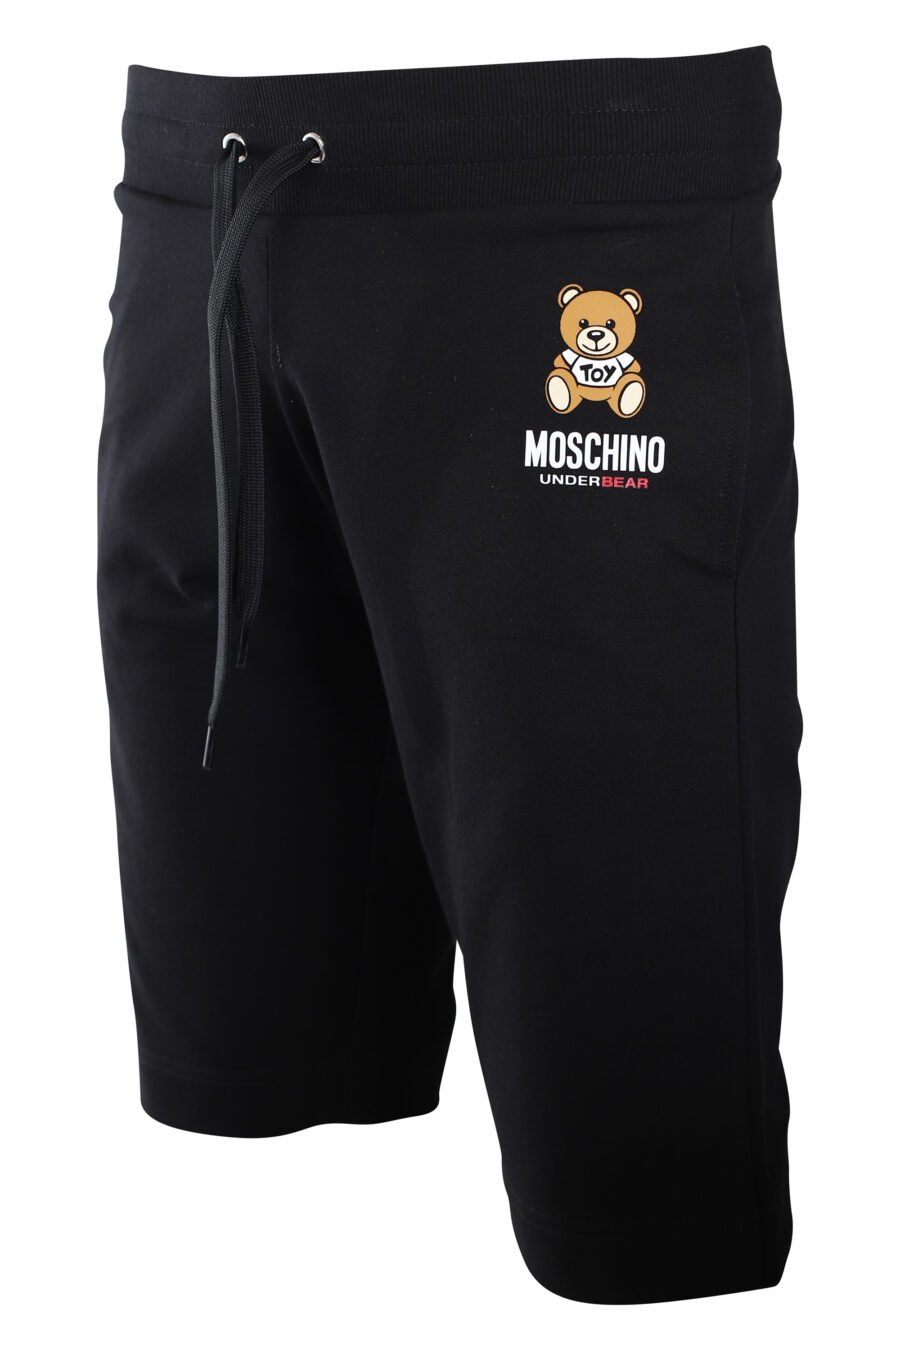 Pantalón de chándal corto negro con minilogo oso "underbear" - IMG 2231